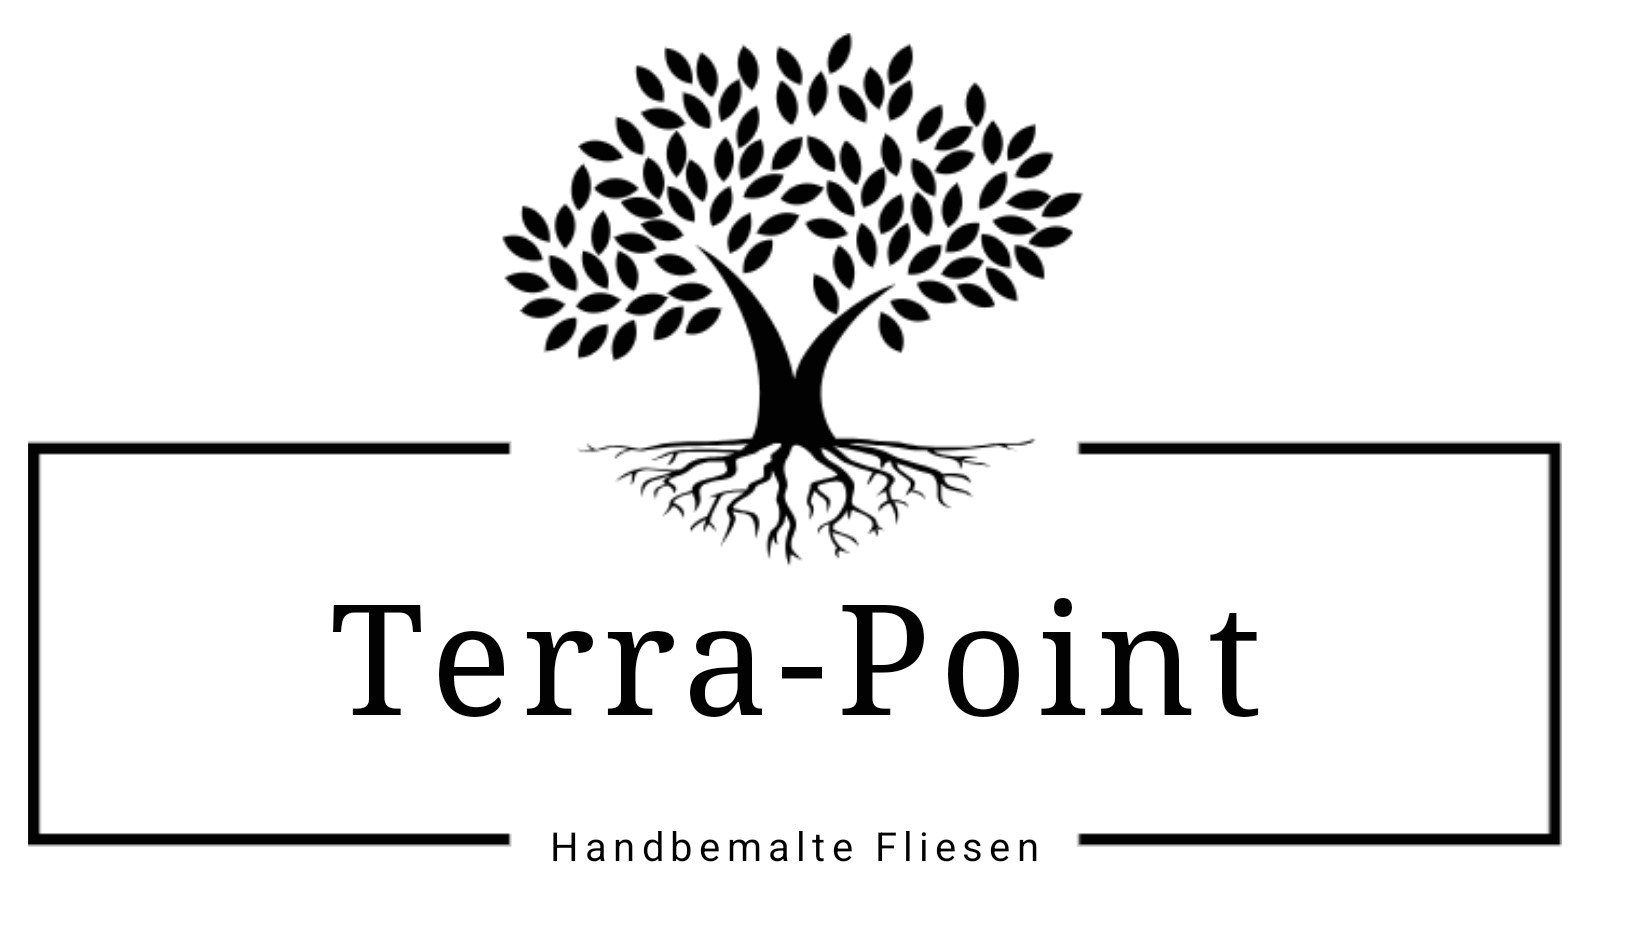 Terra-Point - Handbemalte Fliesen